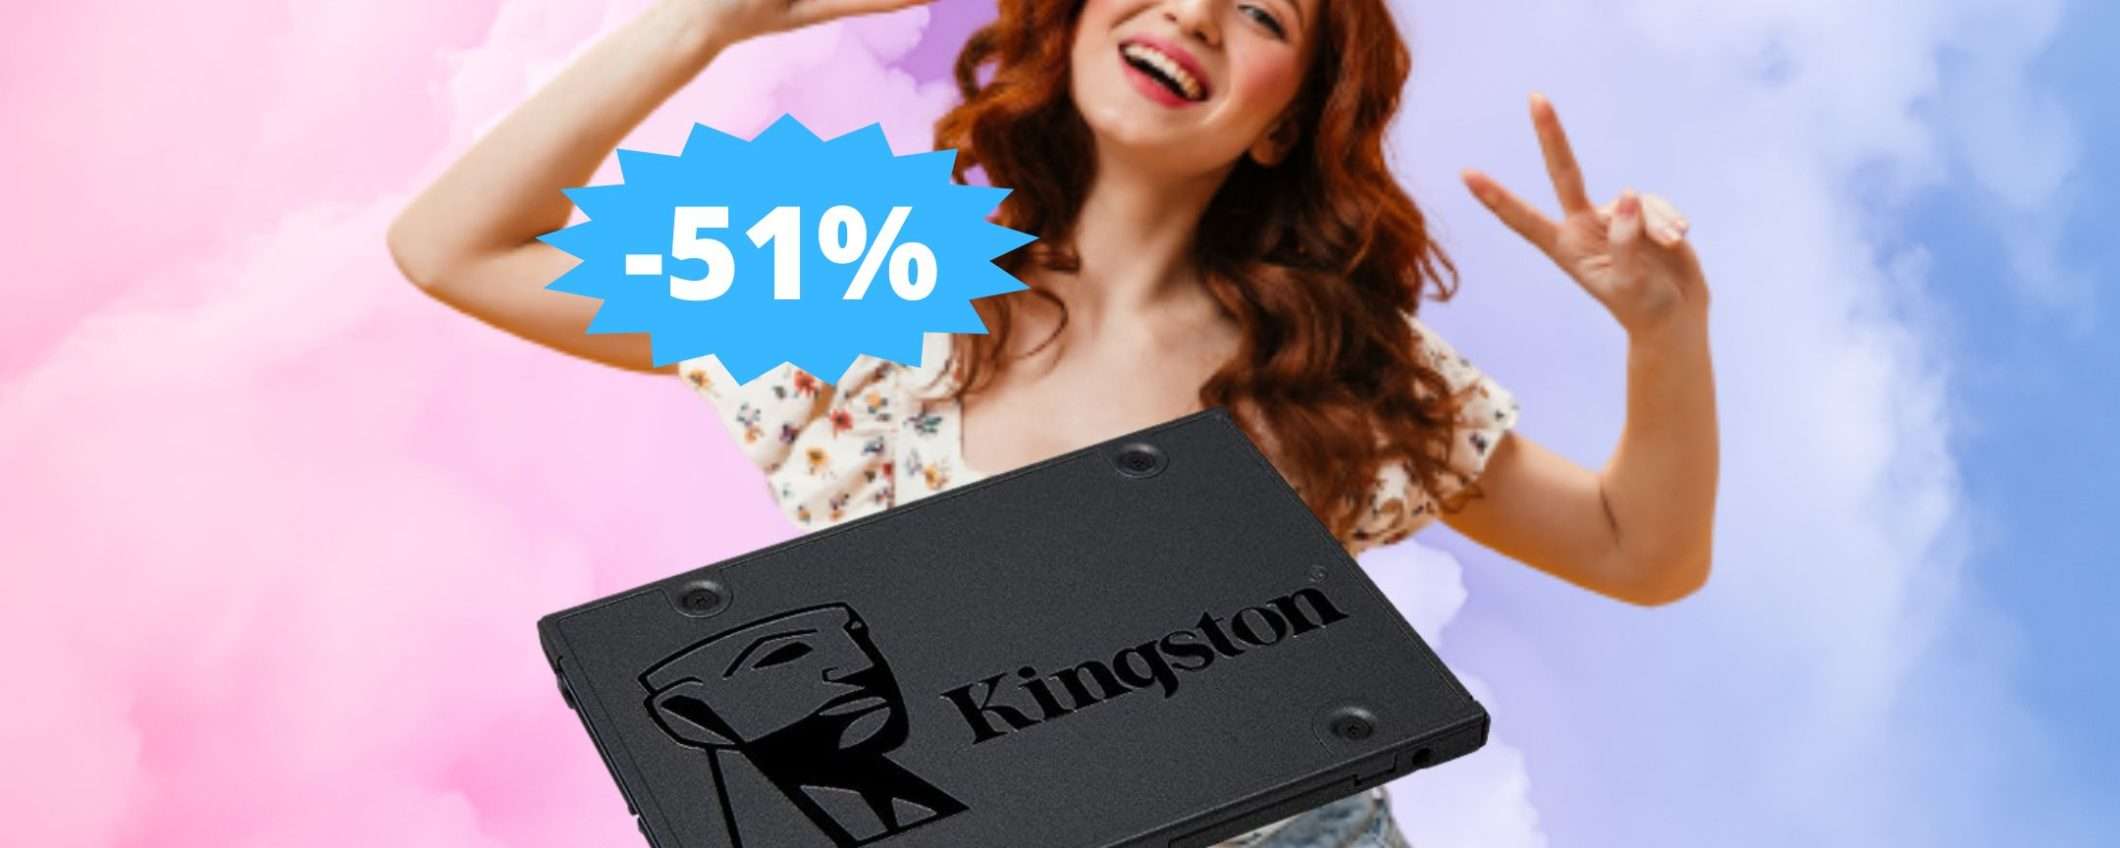 SSD Kingston A400: un AFFARE imperdibile (-51%)